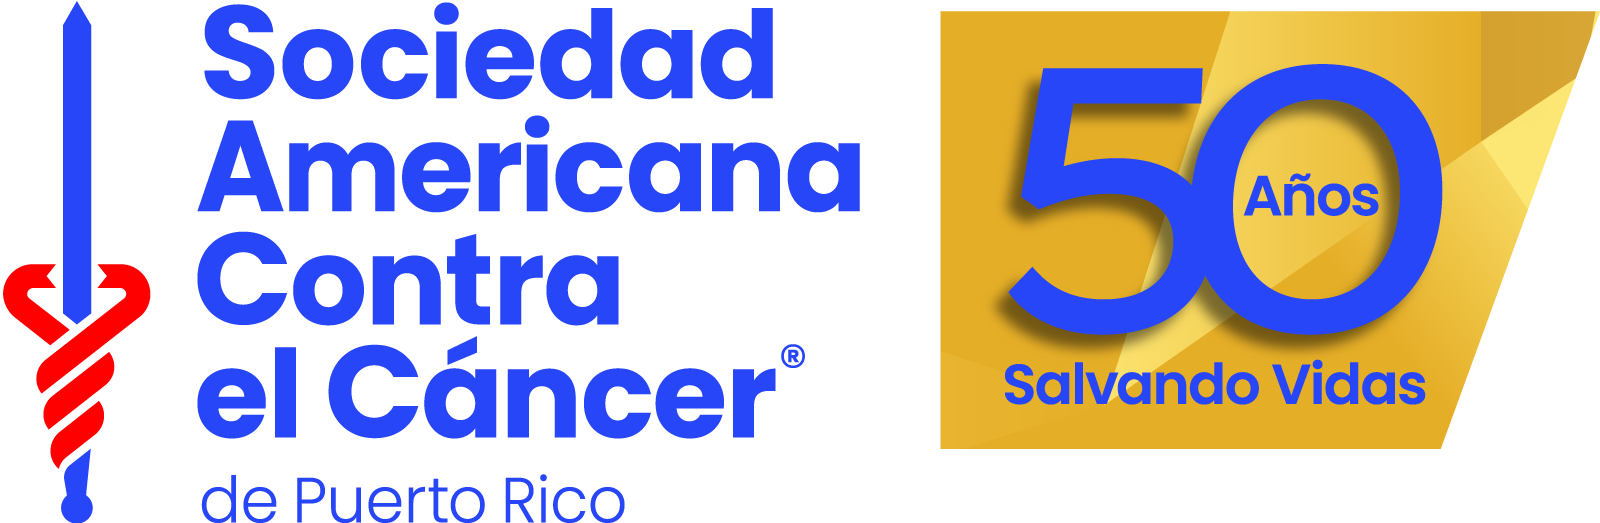 Sociedad Americana Contra el Cancer de Puerto Rico